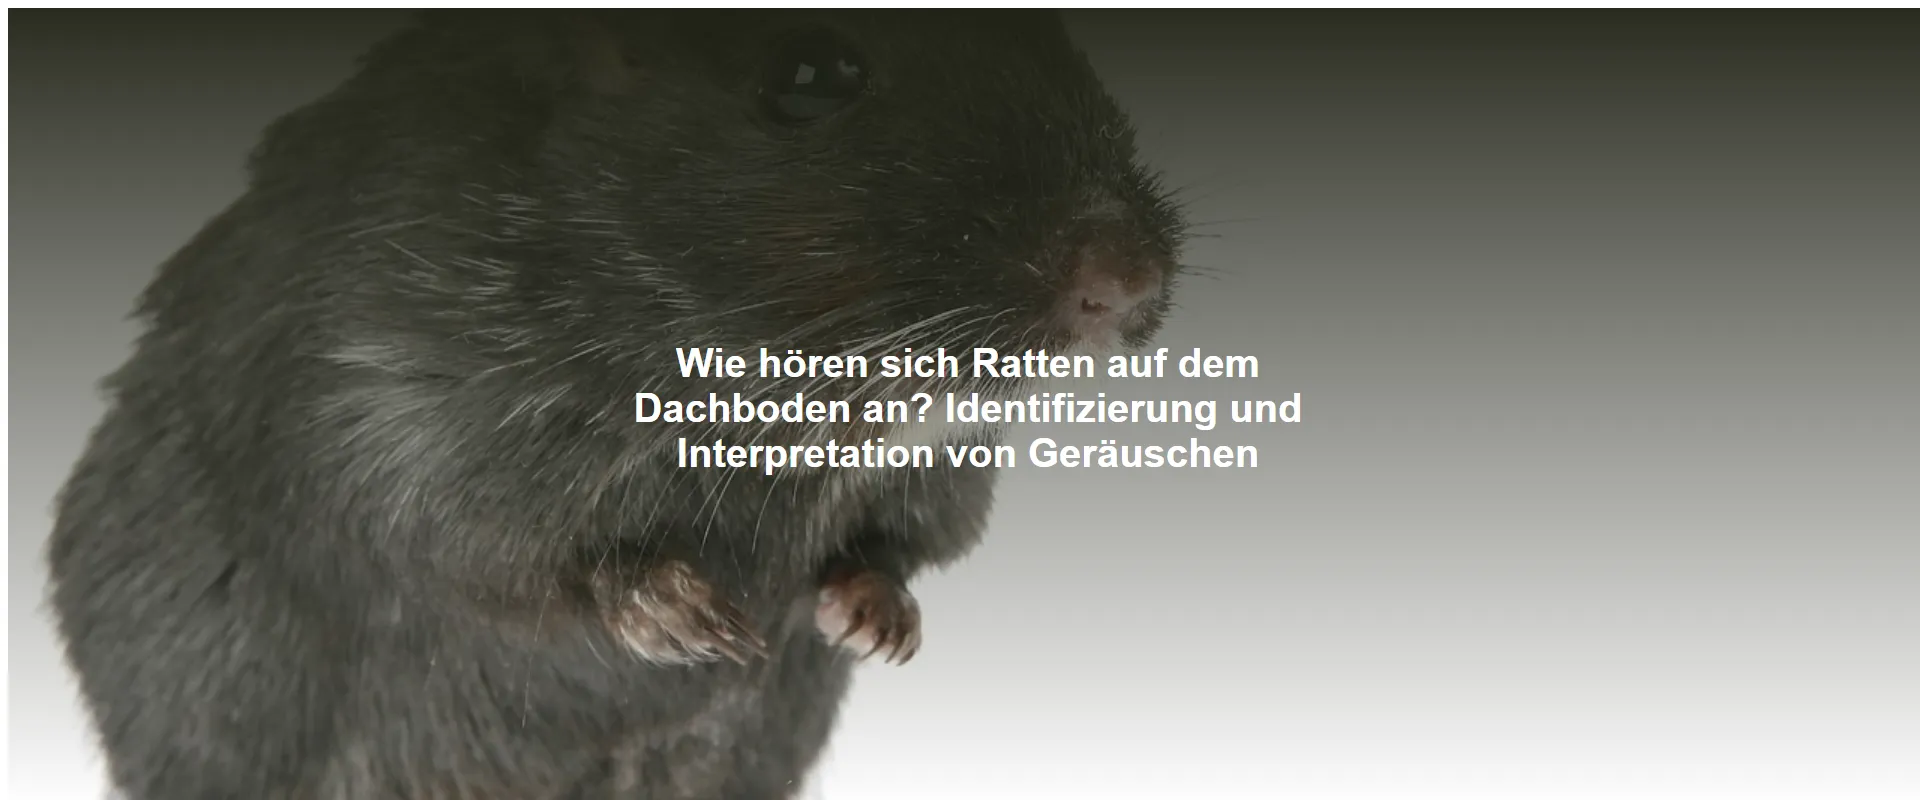 Wie hören sich Ratten auf dem Dachboden an? Identifizierung und Interpretation von Geräuschen